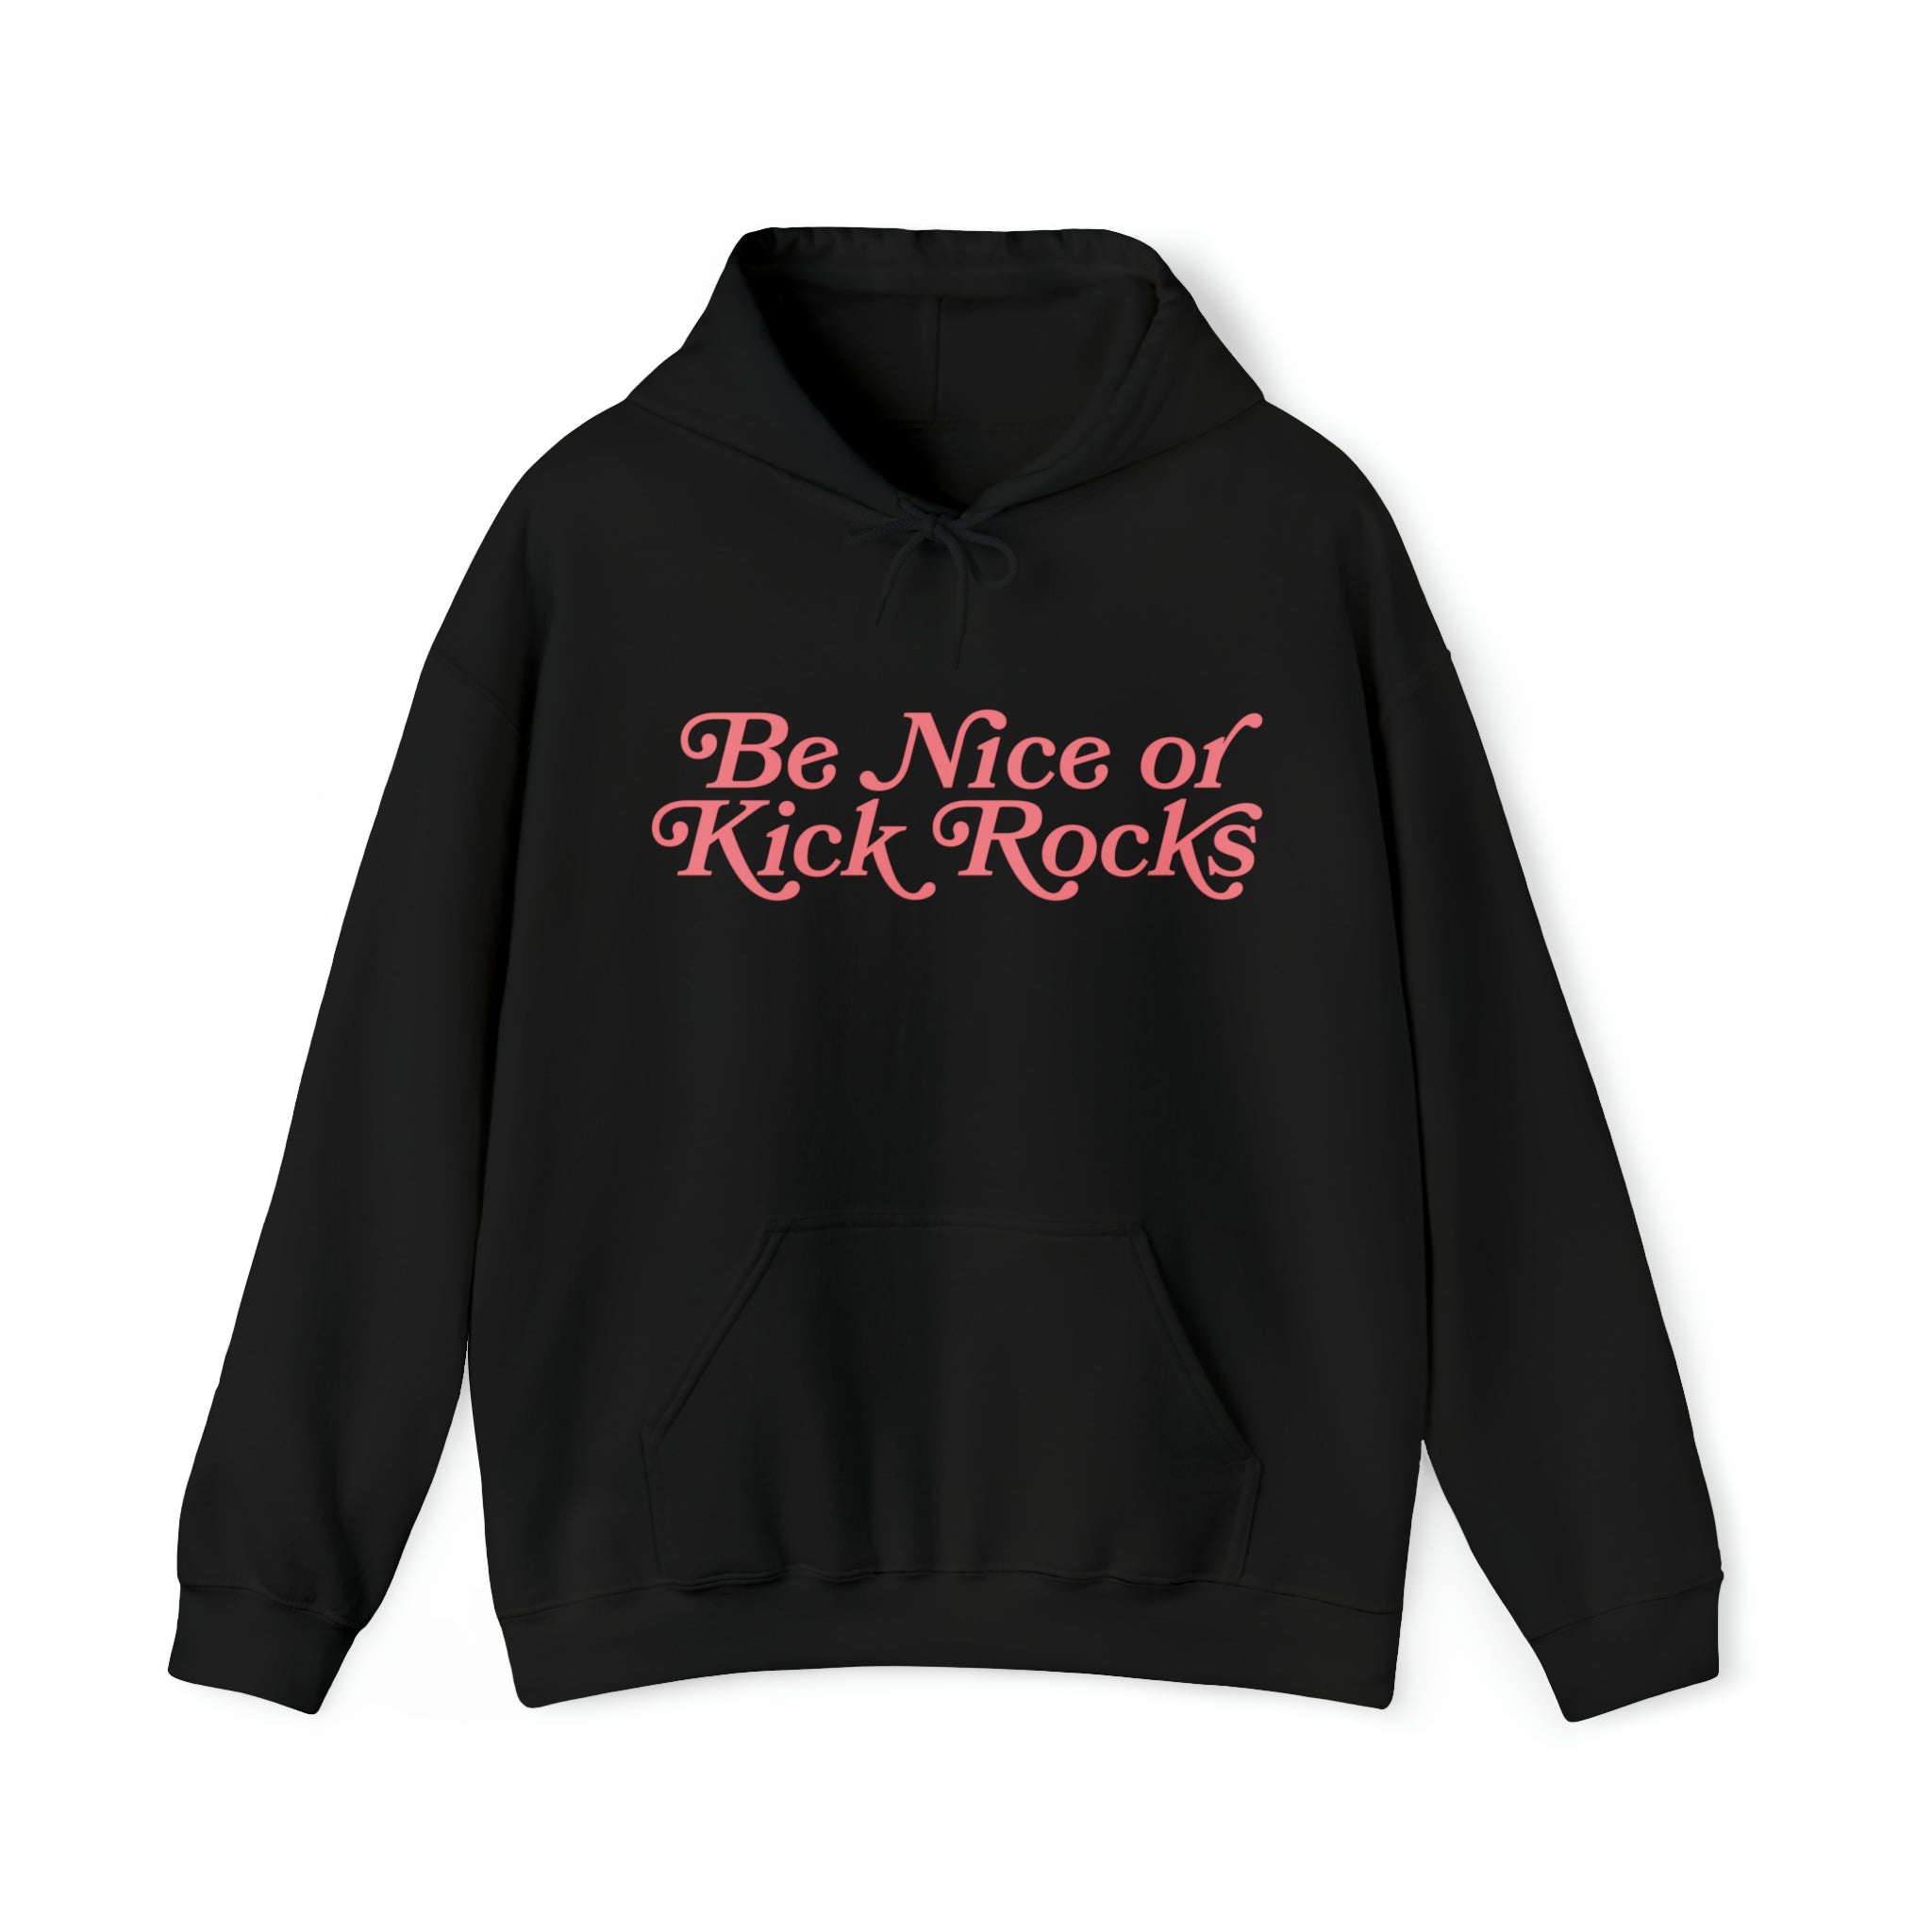 Kick Rocks Hoodie Sweatshirt in black